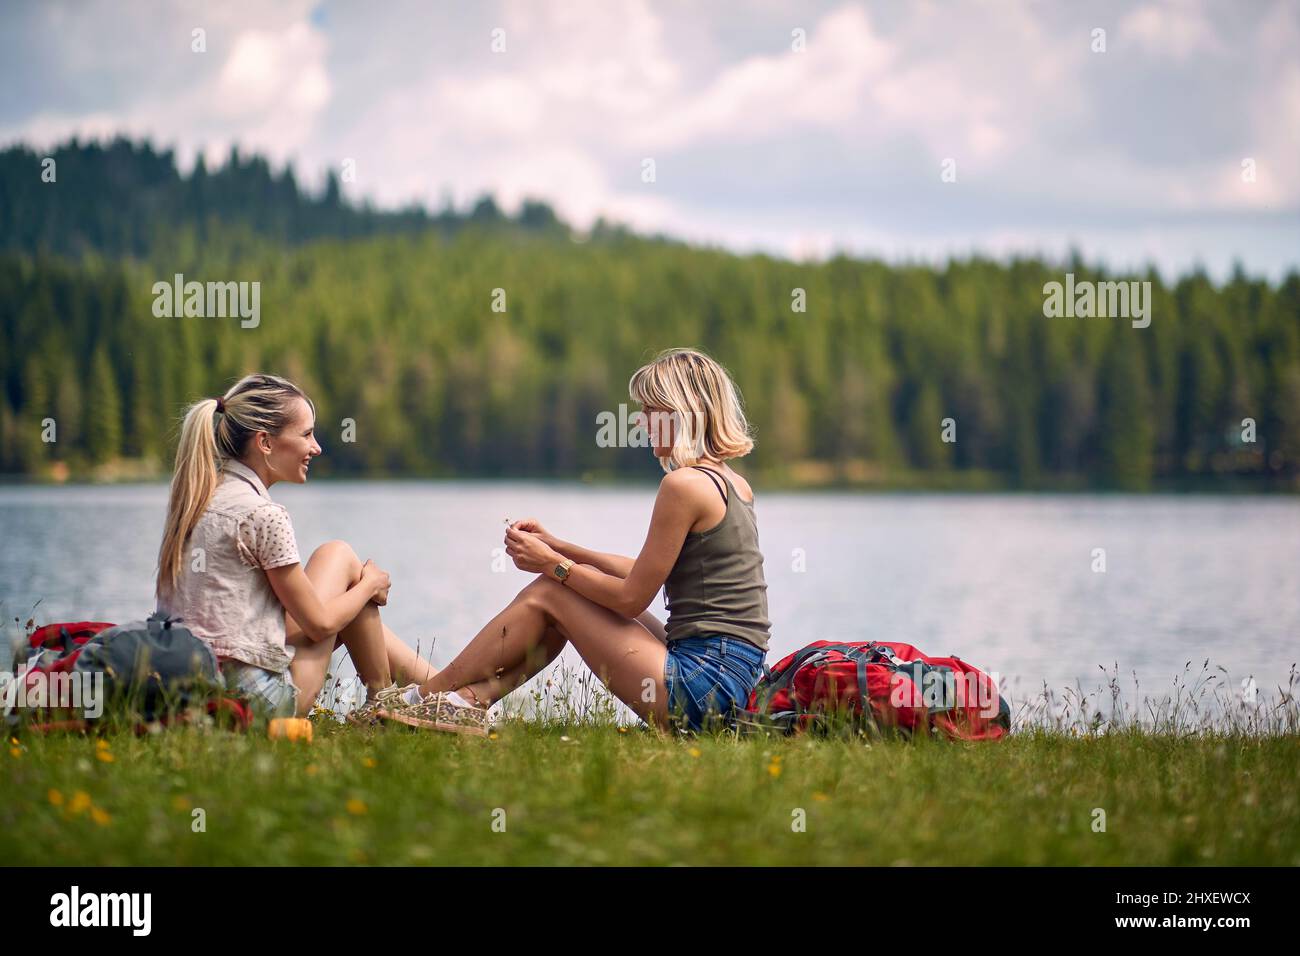 Zwei Frauen sitzen im Gras vor dem See und reden. Leirsure Zeit. Ausflug, Wochenende, Spaß, Lifestyle, Naturkonzept Stockfoto